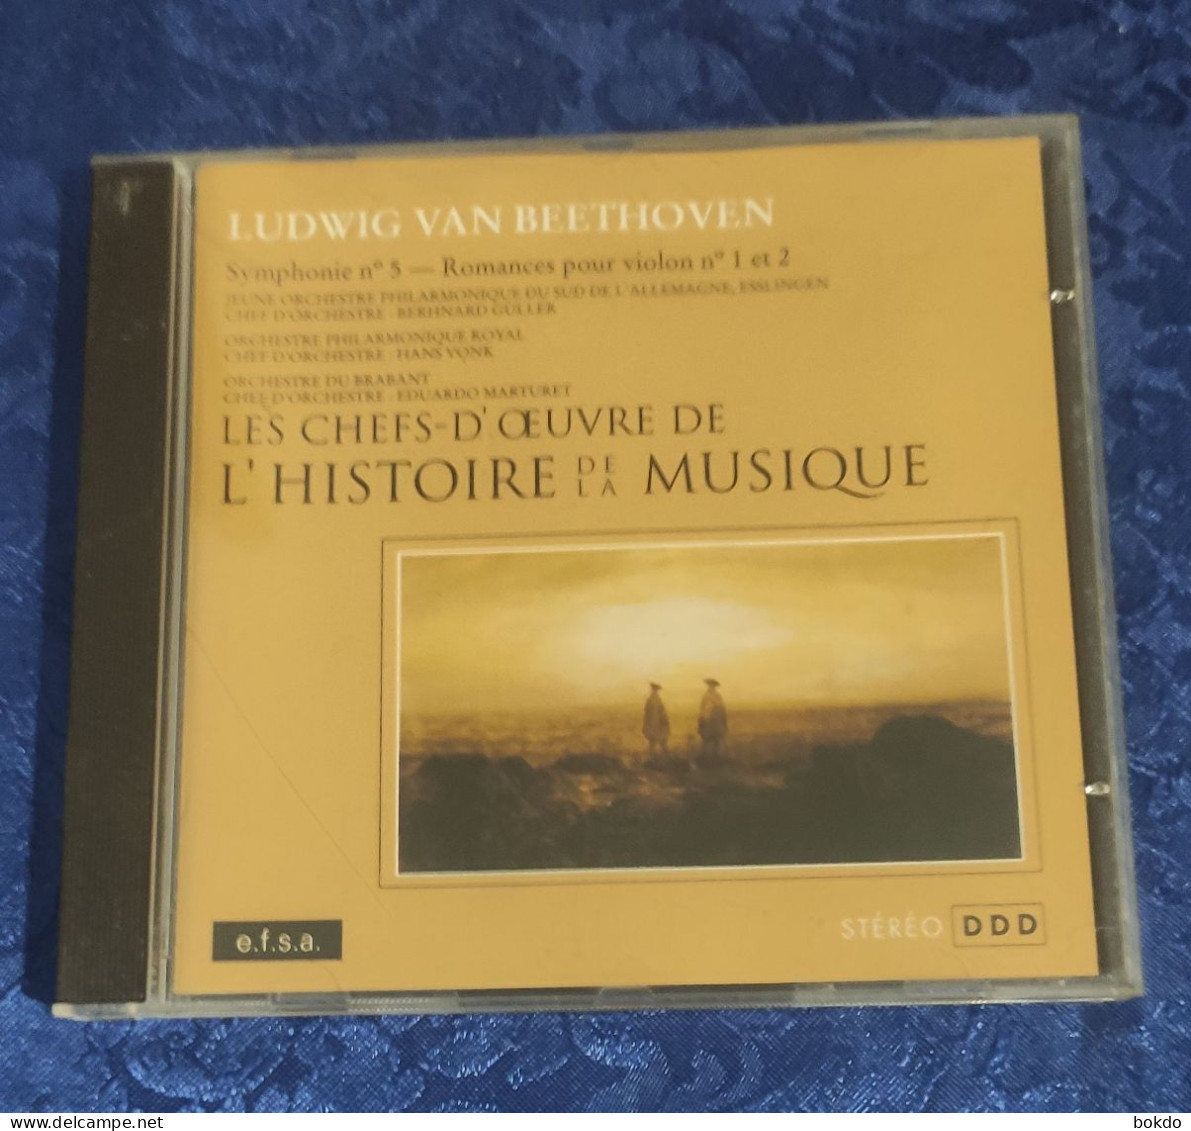 Ludwig Van Beethoven - Symphonie N° 5 - Romances Pour Violon N) 1 Et 2 - Classique